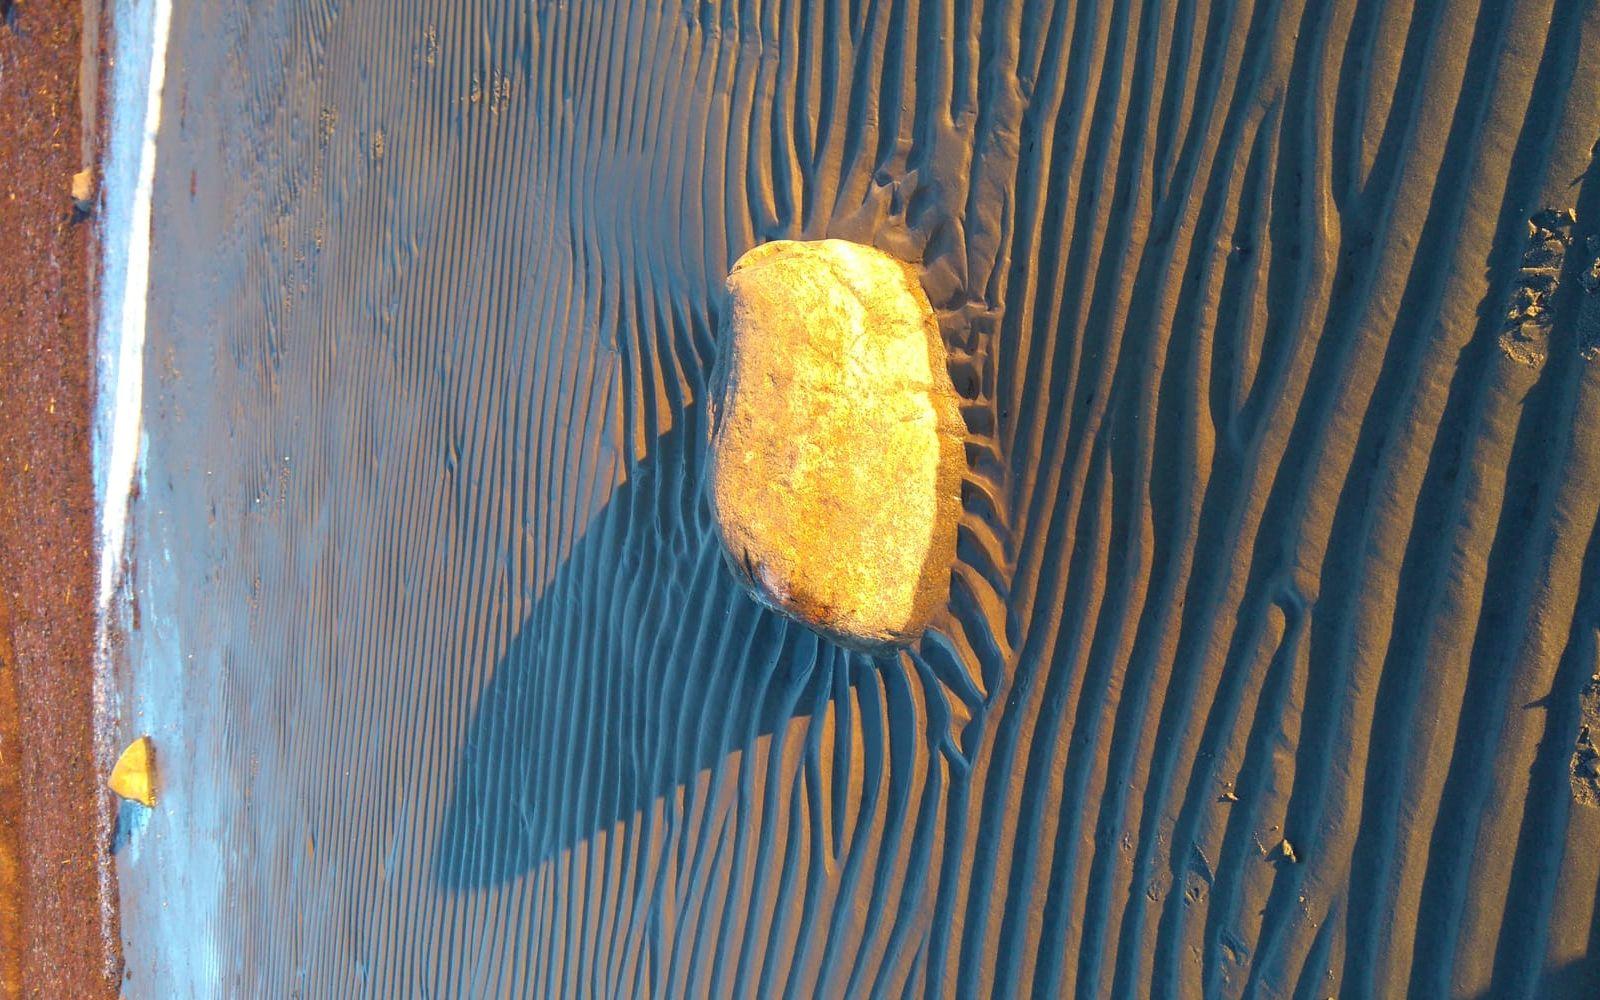 Guldlyssnde stenar vid havet. Bilden är tagen söder om Glommen. BILD: Gunnel Sigfeldt Jonsson